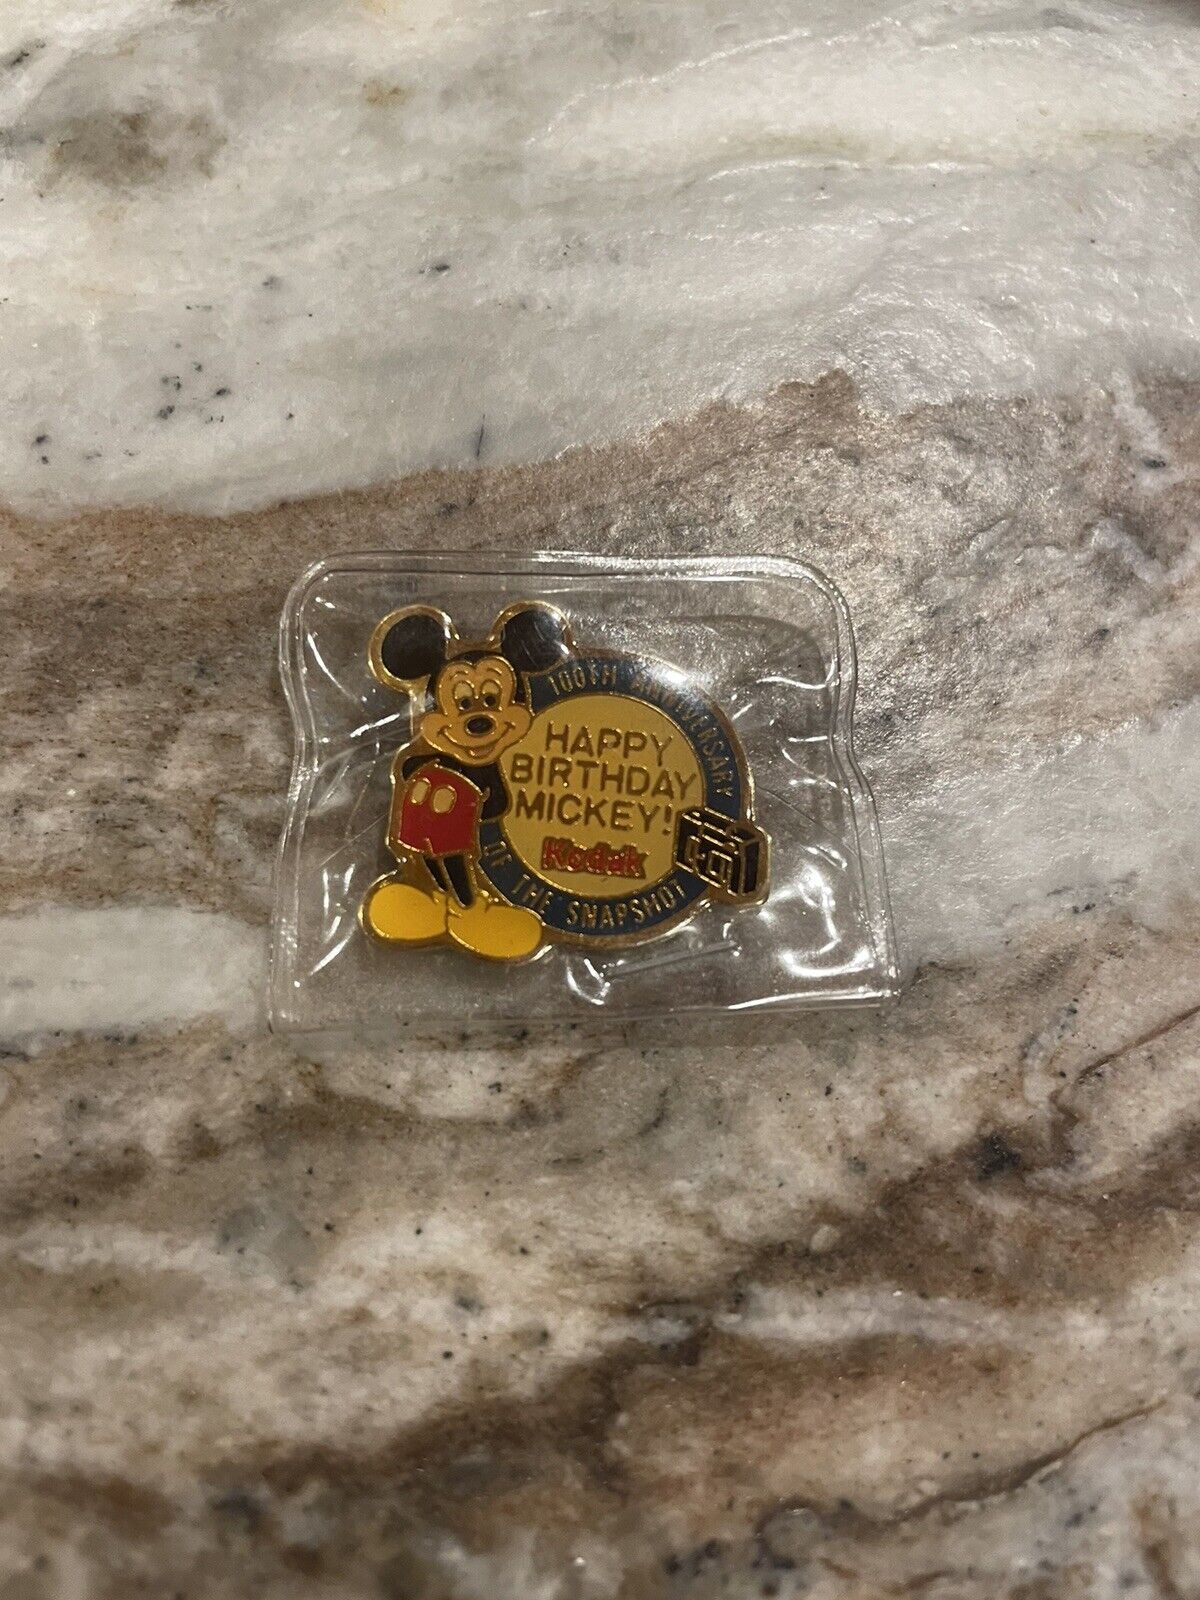 Vintage Kodak Happy Birthday Mickey Mouse 100th Anniversary Camera Pin Lapel Pin